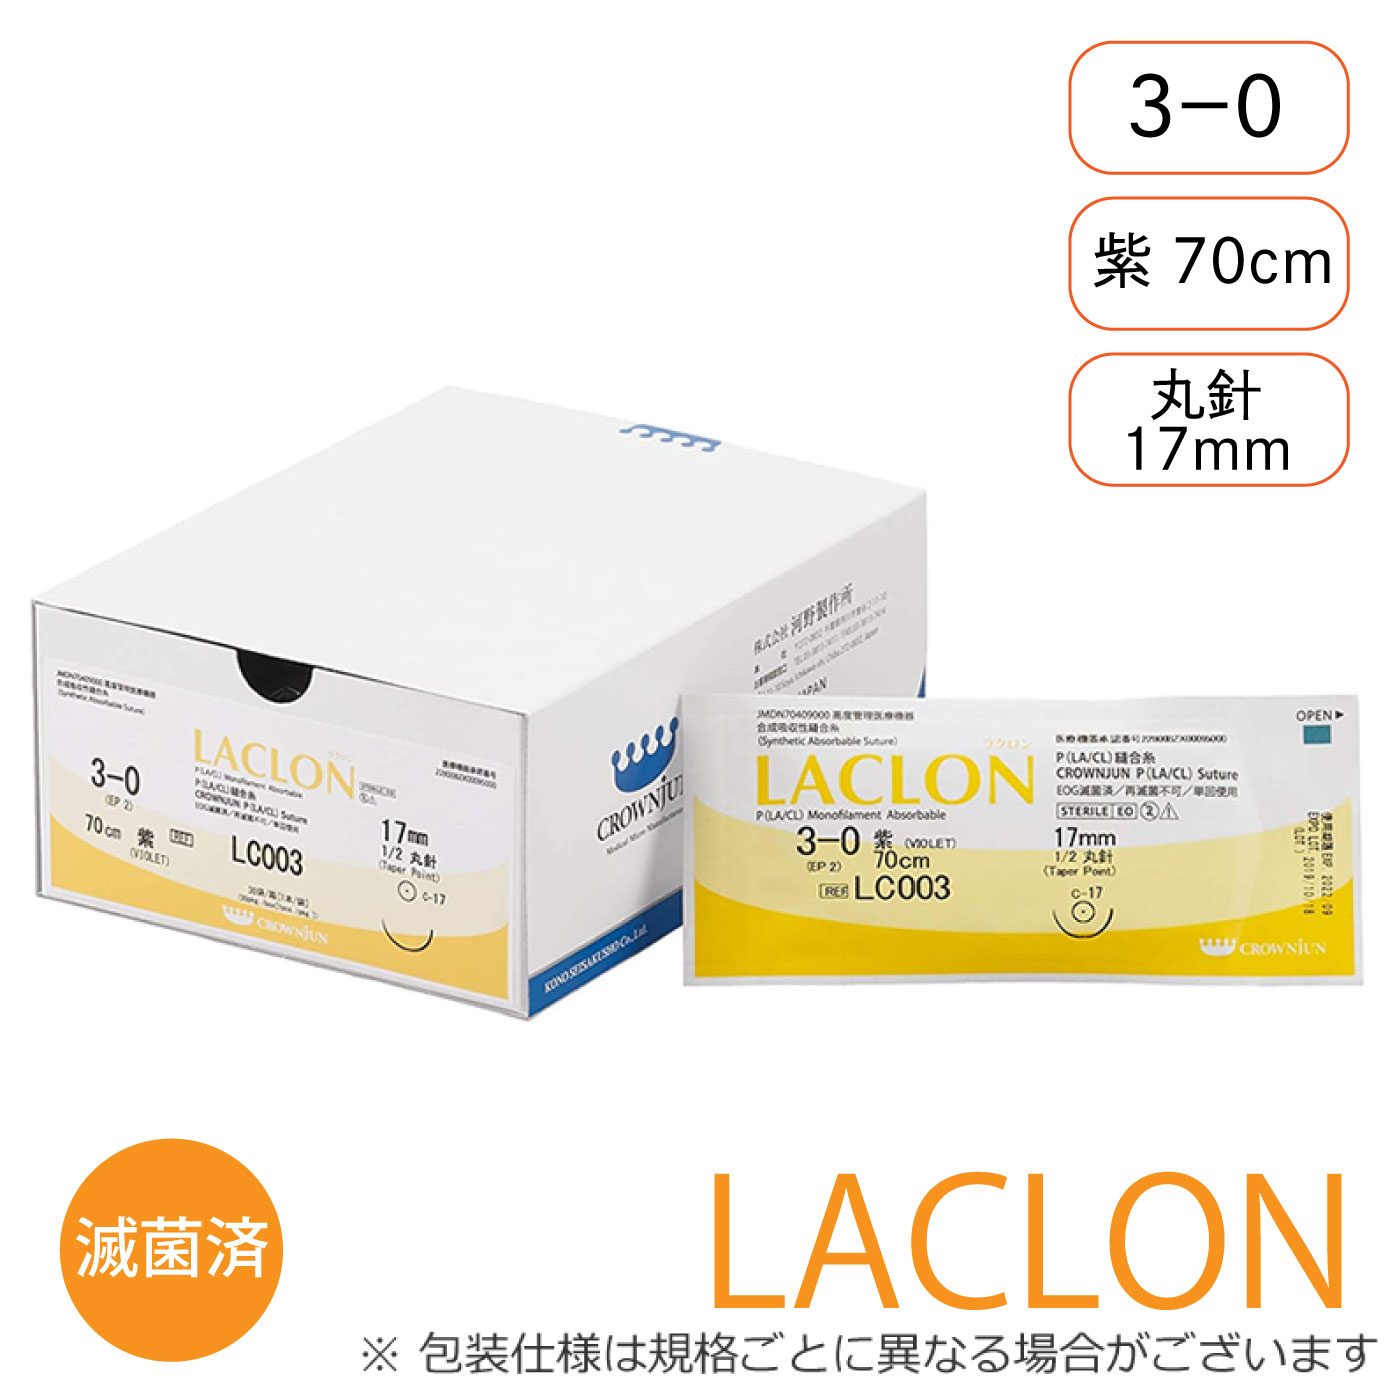 針付ラクロン C-17mm/3-0/70cm/紫/モノフィラメント吸収糸【LC003】